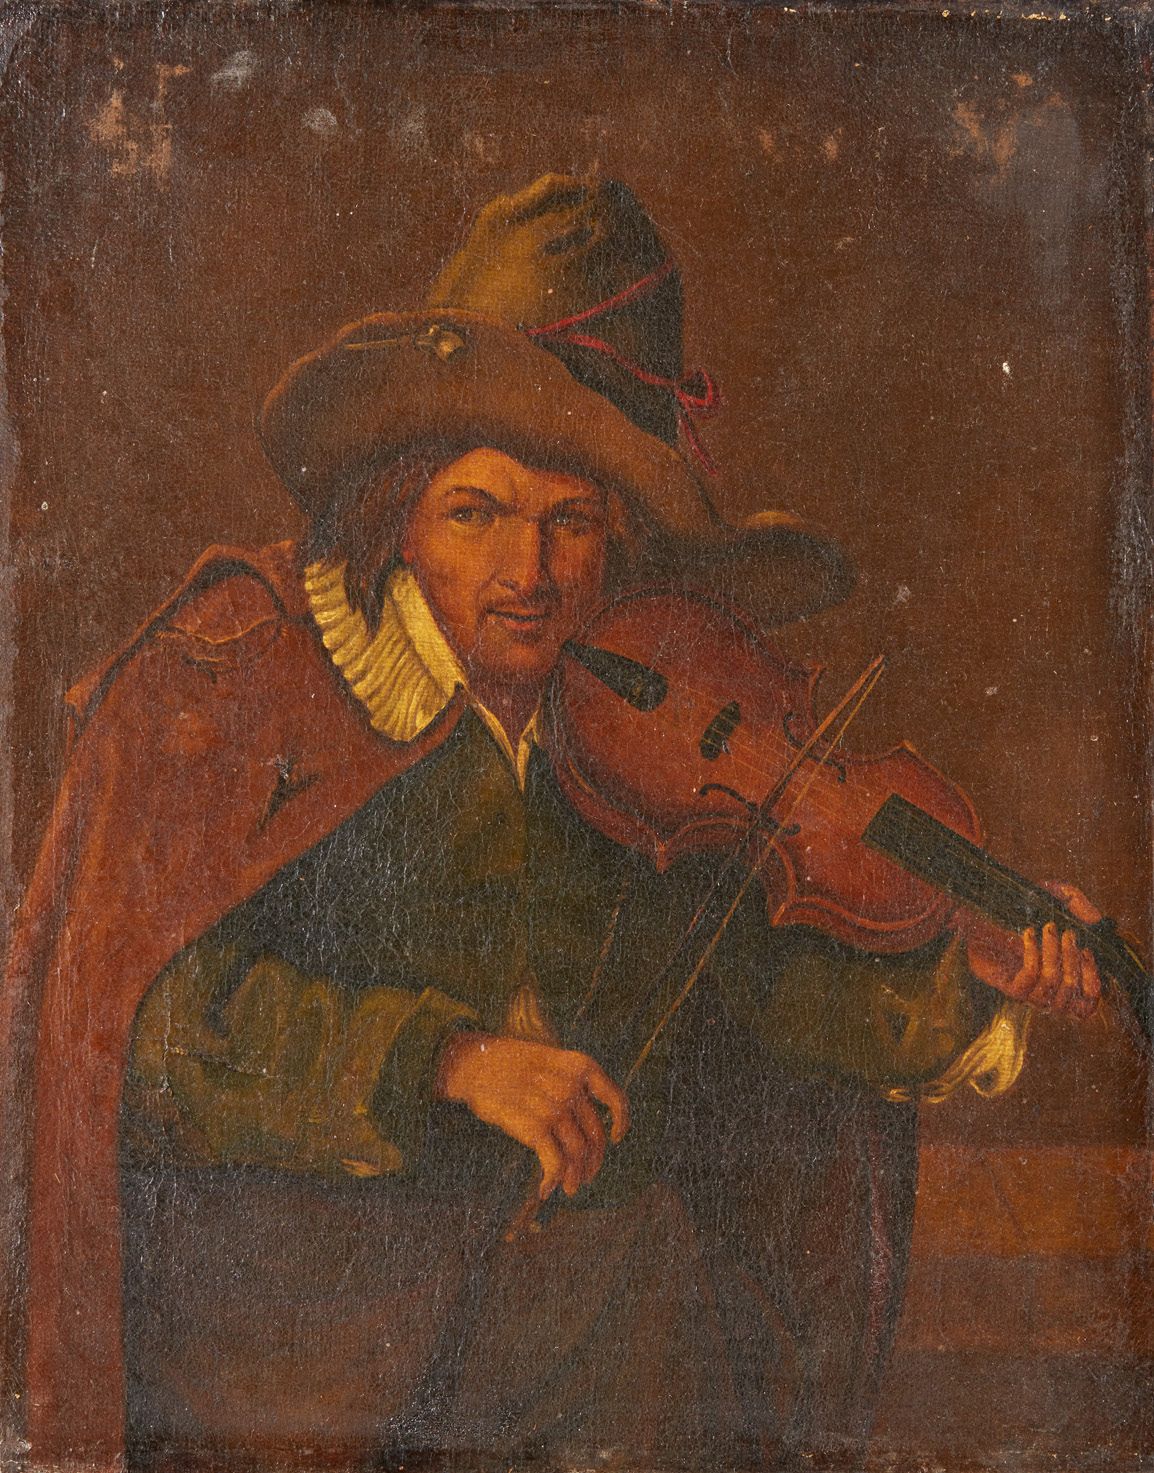 Ecole Italienne du XVIIIe siècle Le violoniste
Toile 50,5 x 40 cm
(sans cadre)